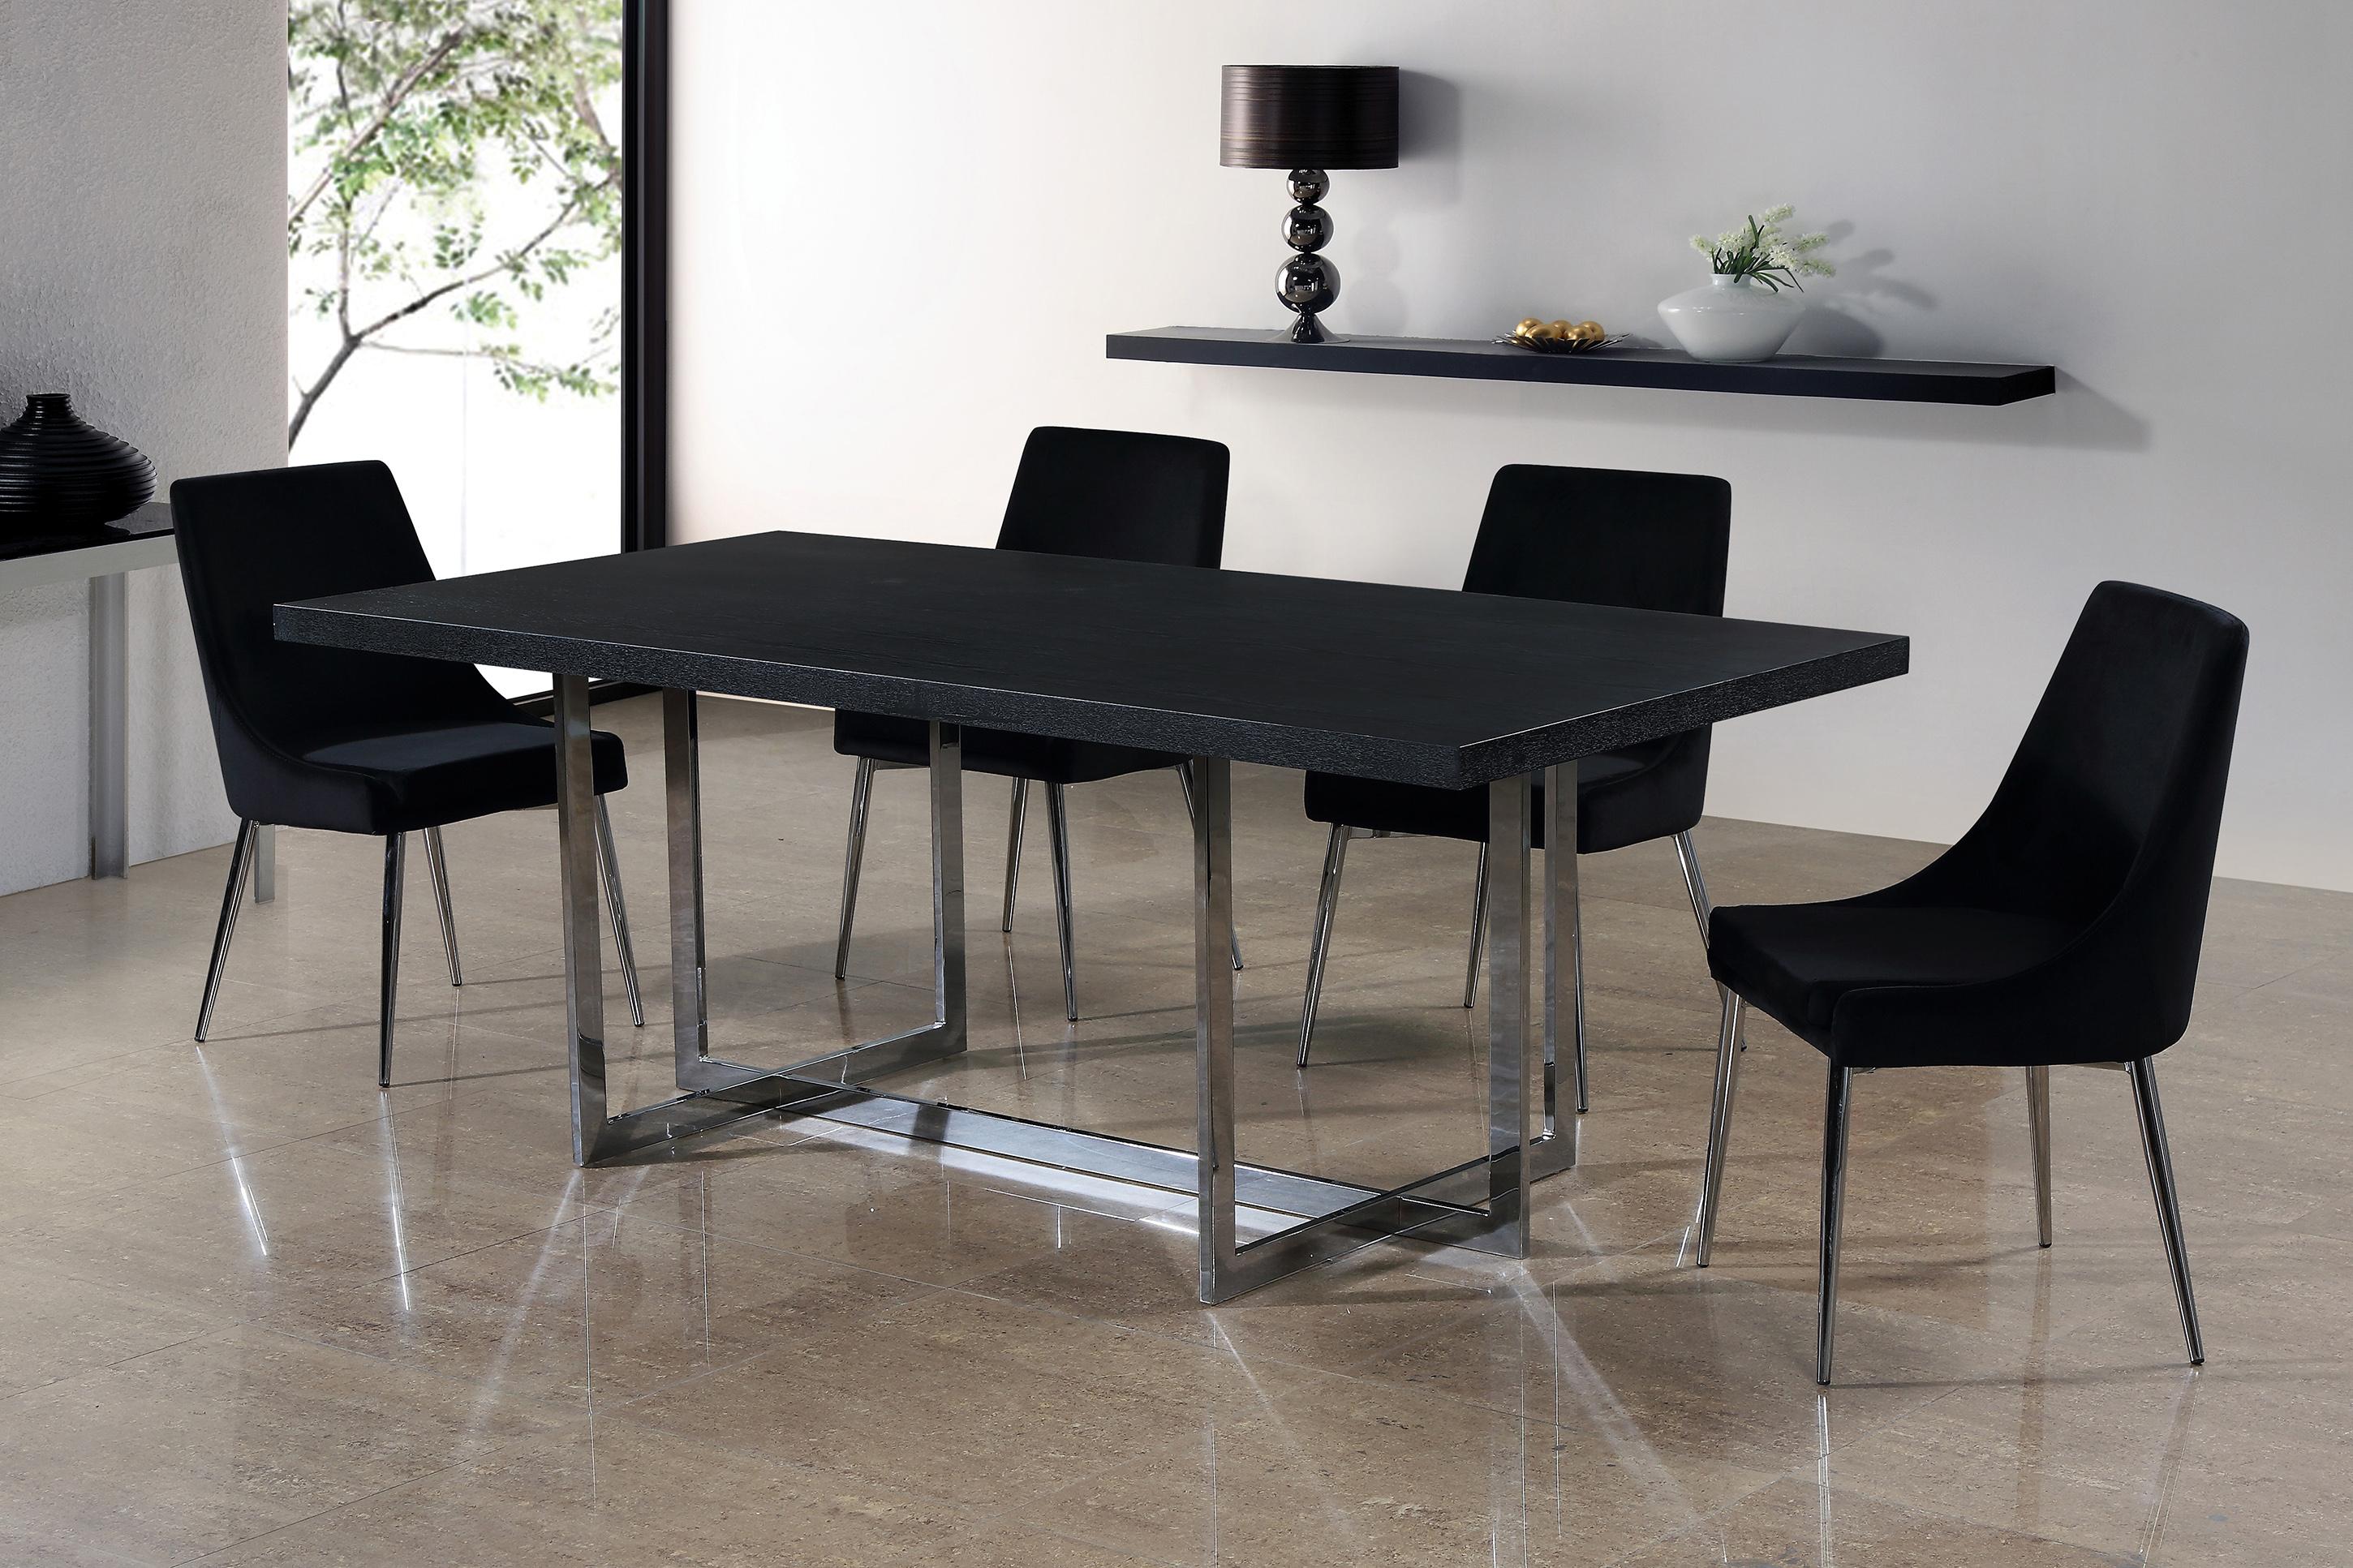 Contemporary, Modern Dining Table Set 738-T-784Black-C 738-T-784Black-C-set-7 in Chrome, Black Velvet